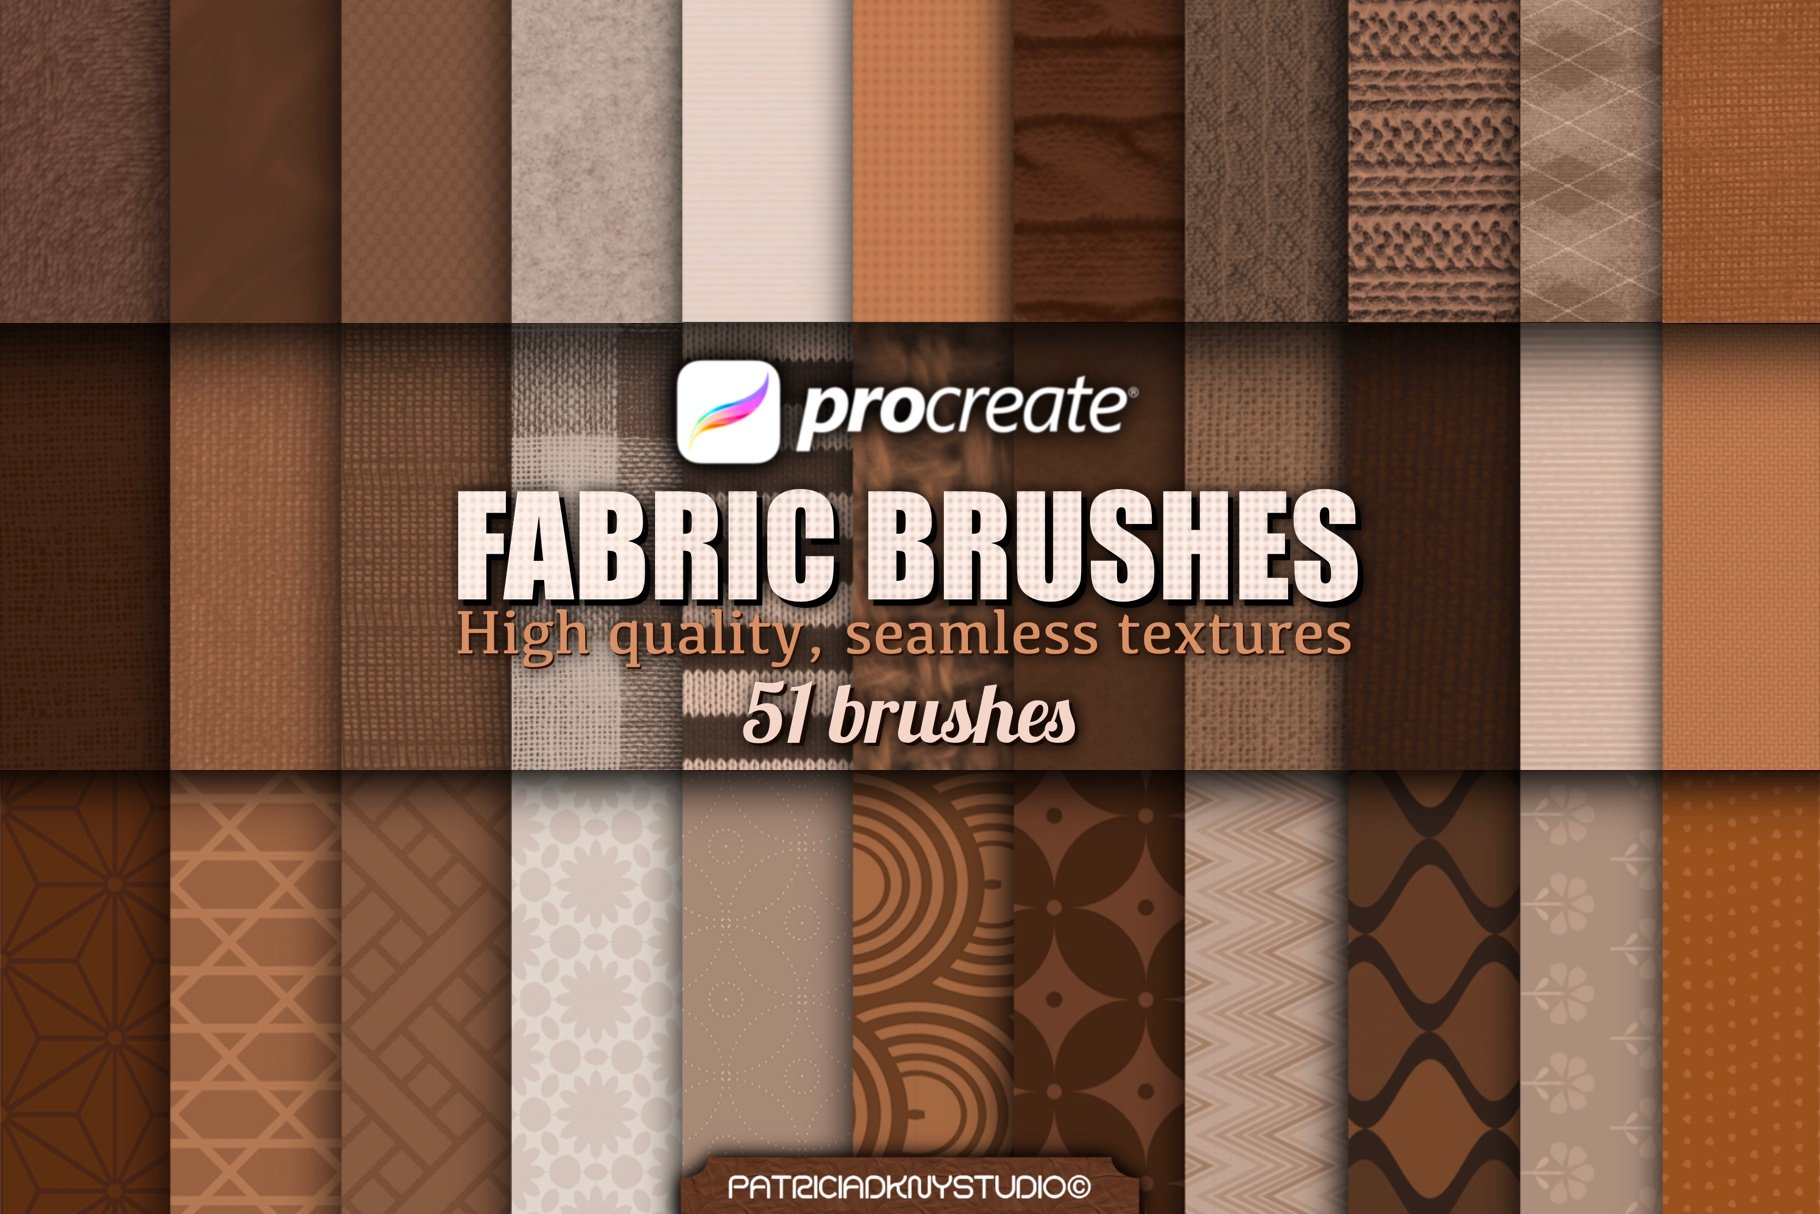 procreate clothing pattern brushes free